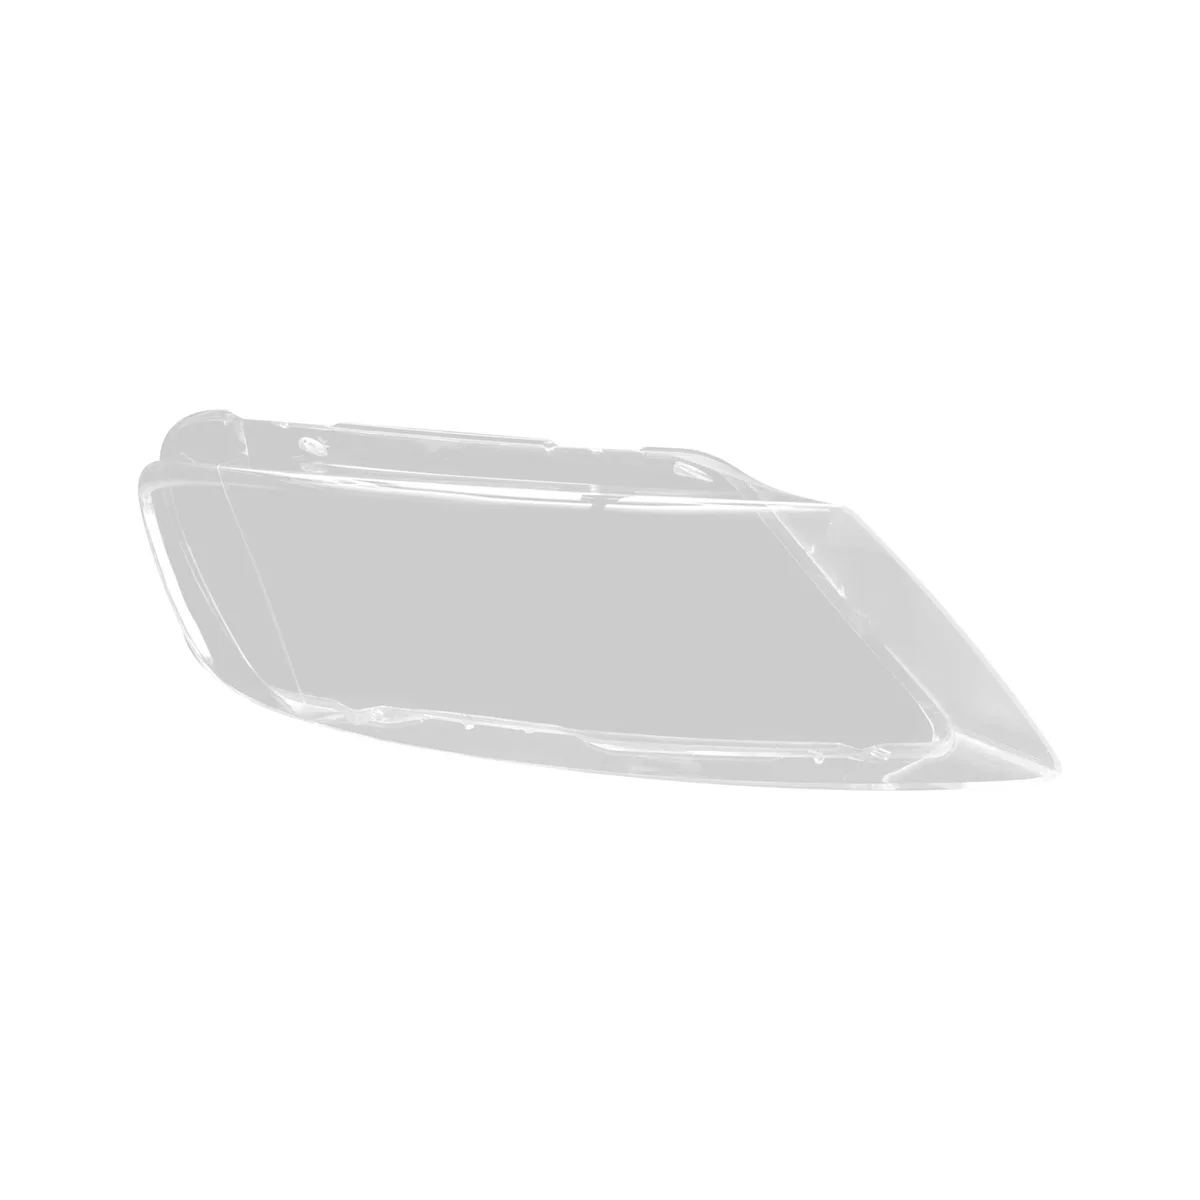 Корпус правой фары автомобиля, абажур, Прозрачная крышка объектива, крышка фары для VW Phaeton 2004-2010